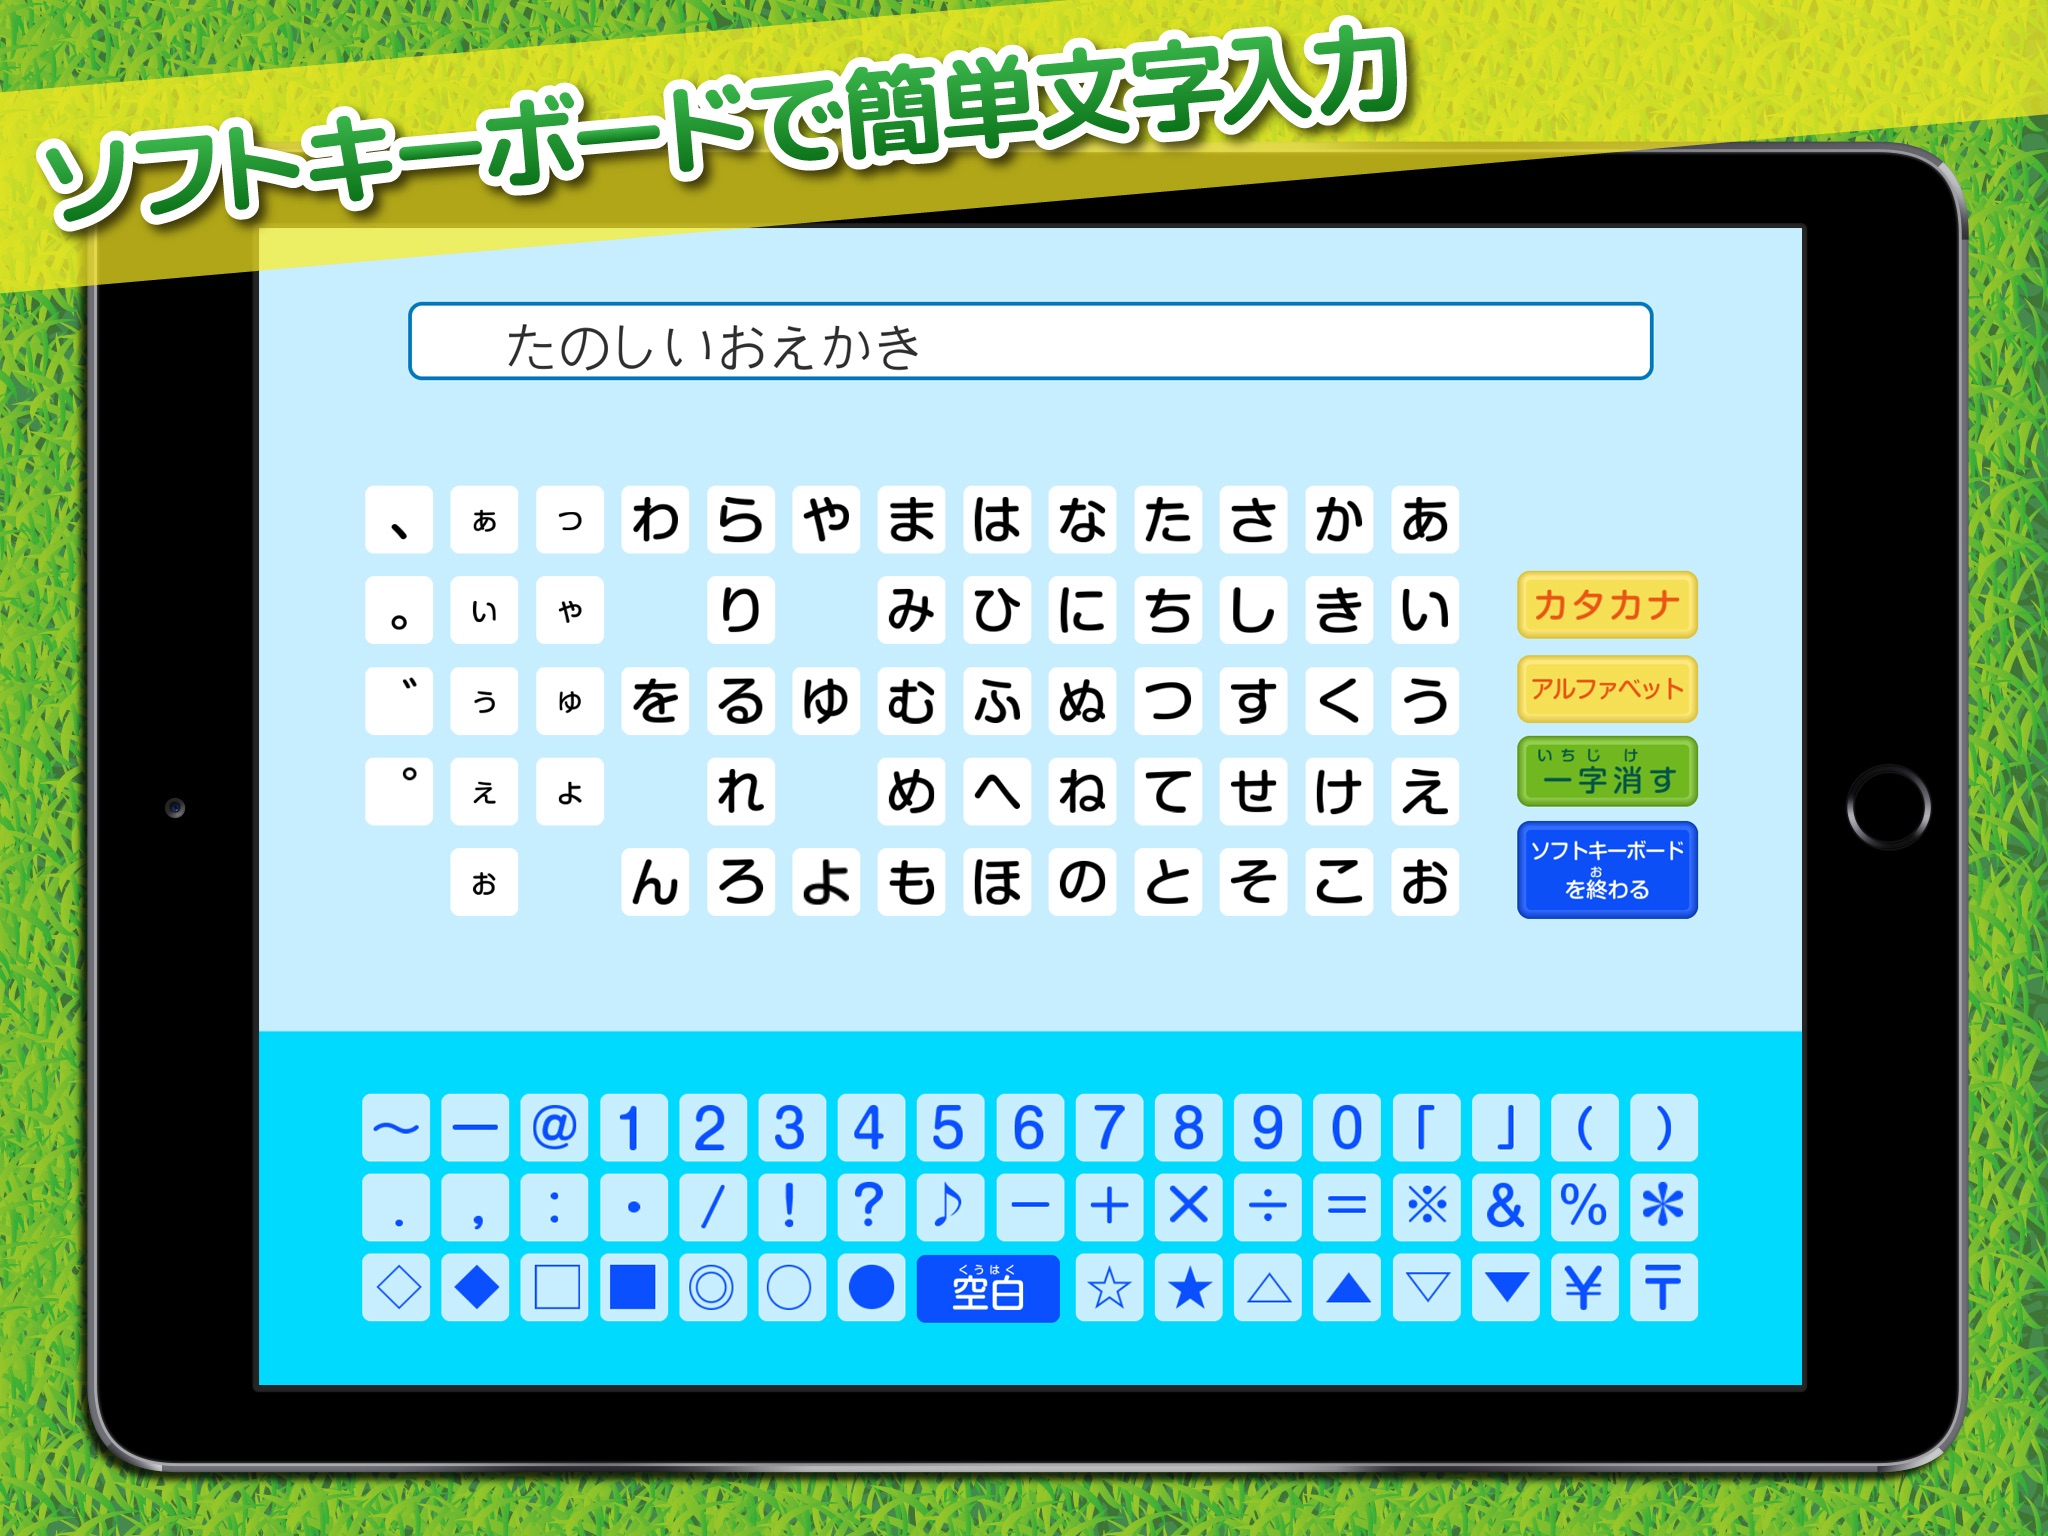 ピクチャーキッズ for iPad screenshot 4